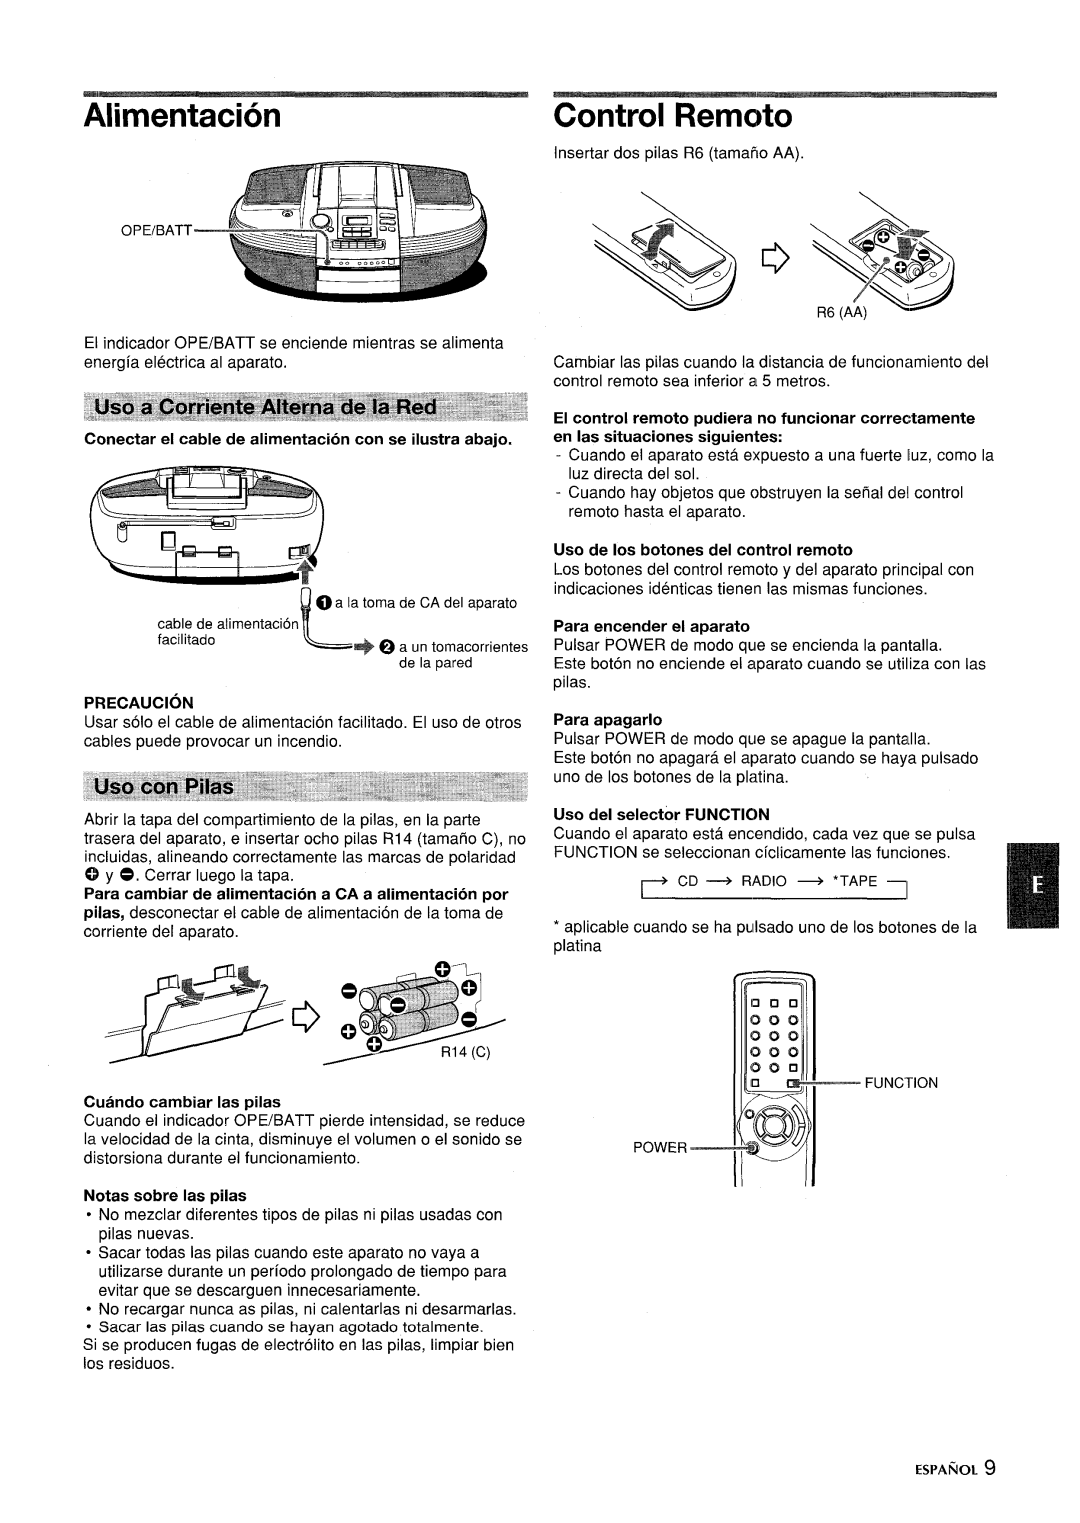 Aiwa CSD-ED87 Alimentacion, Control Remoto, Uso de Ios botones del control remoto, Para encender el aparato, Precaution 